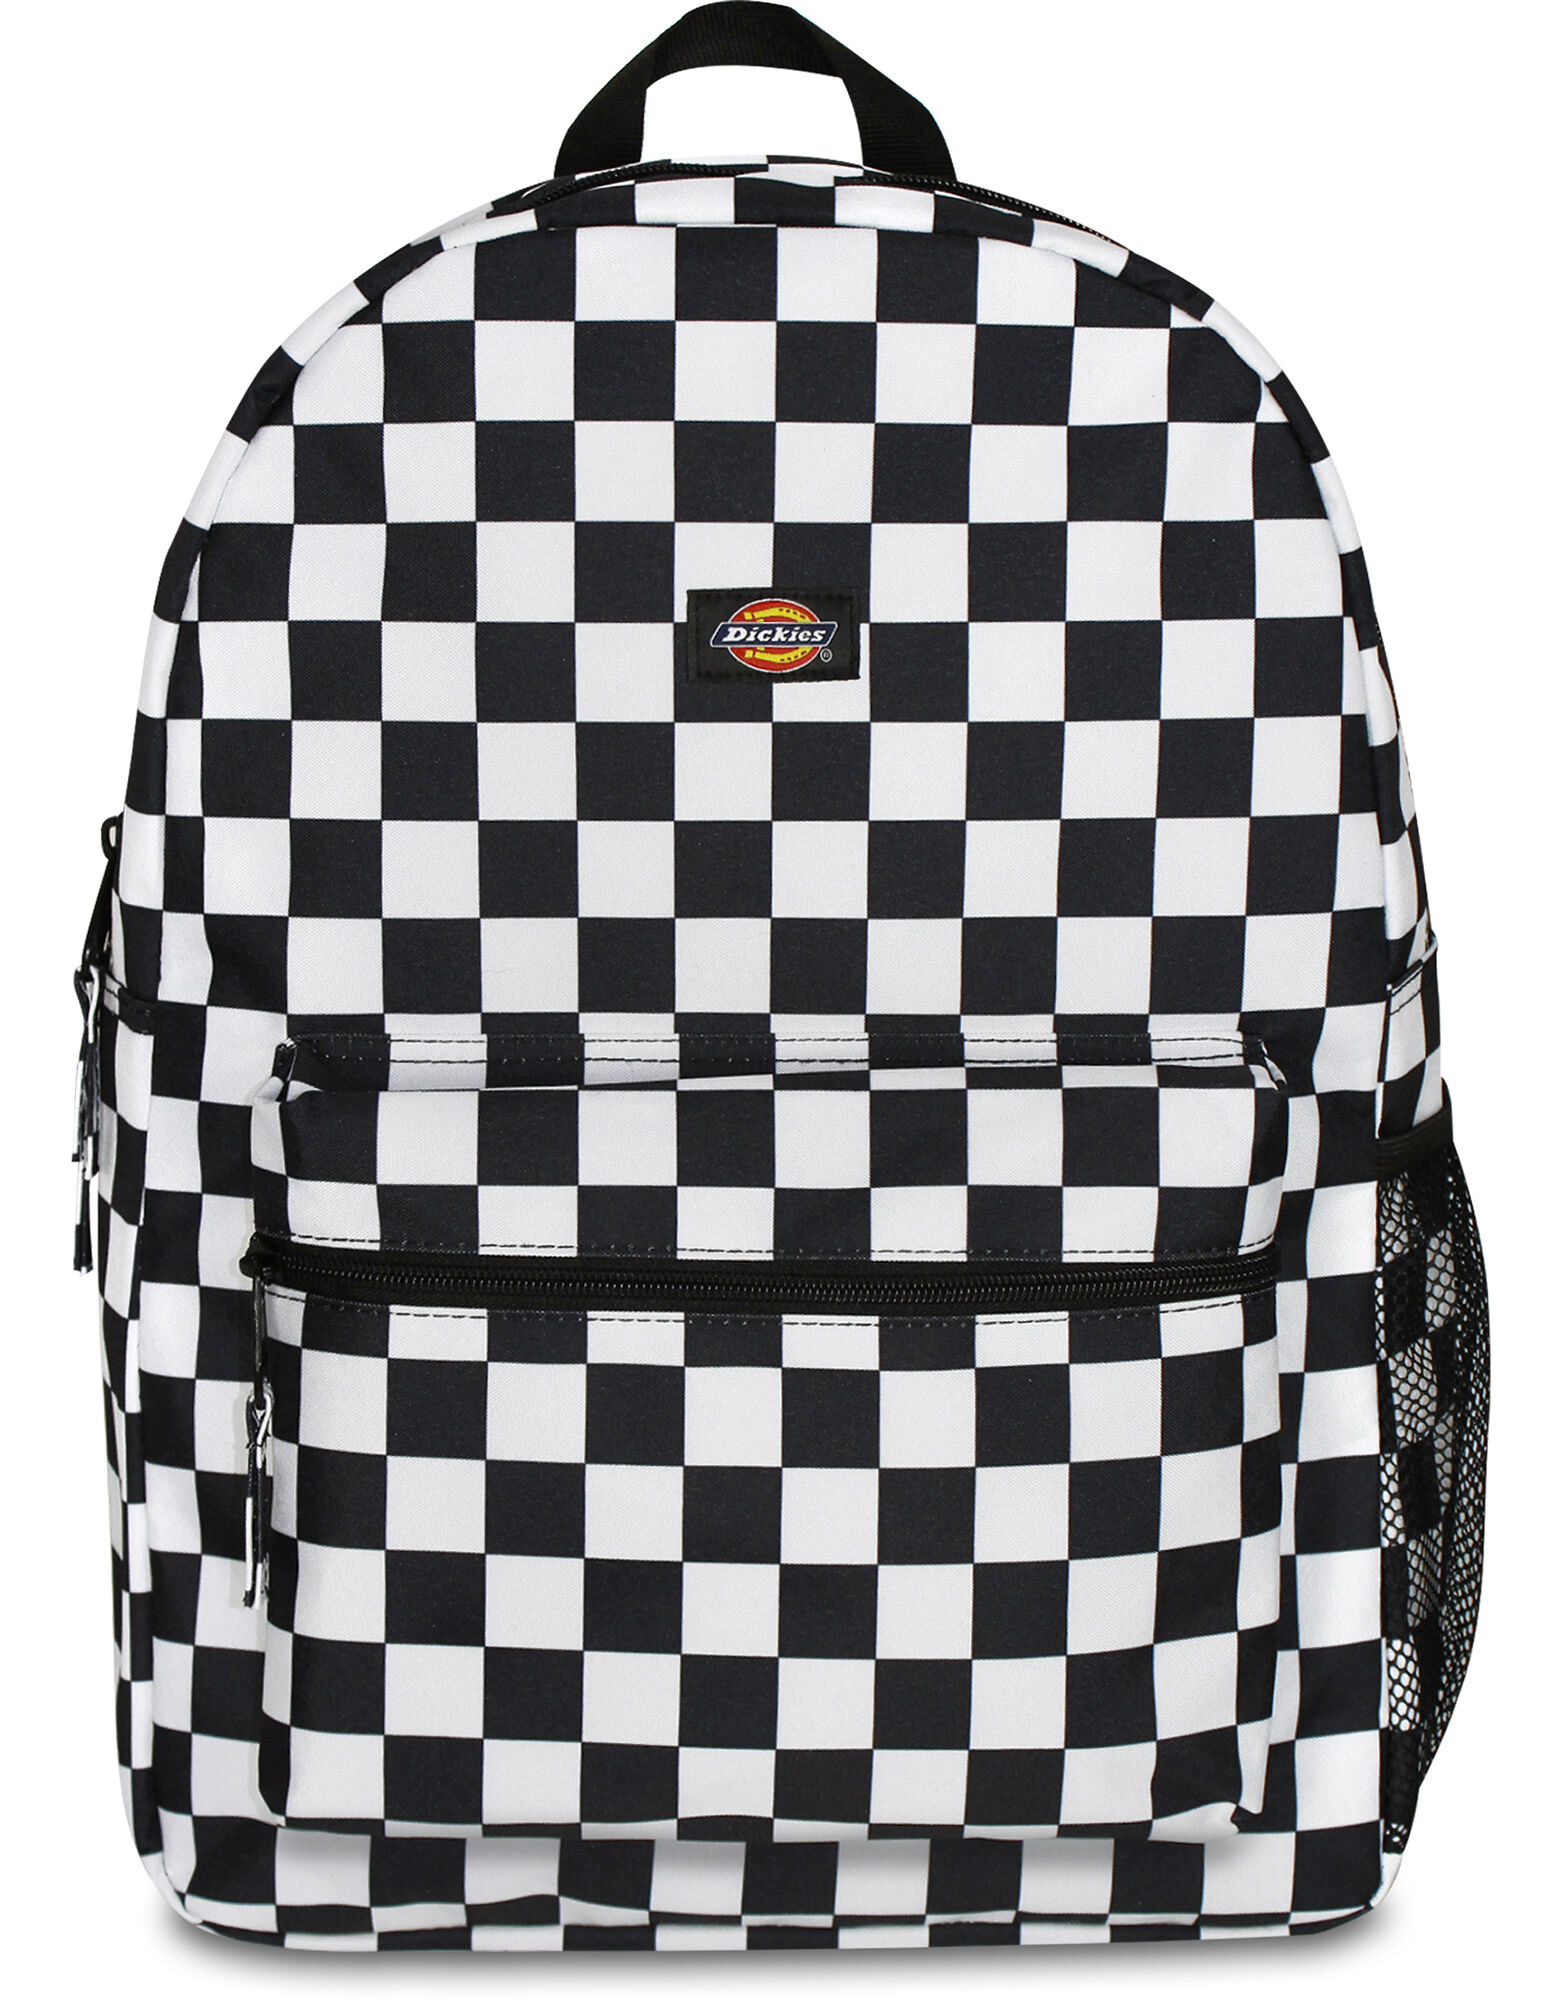 black and white checkered bookbag